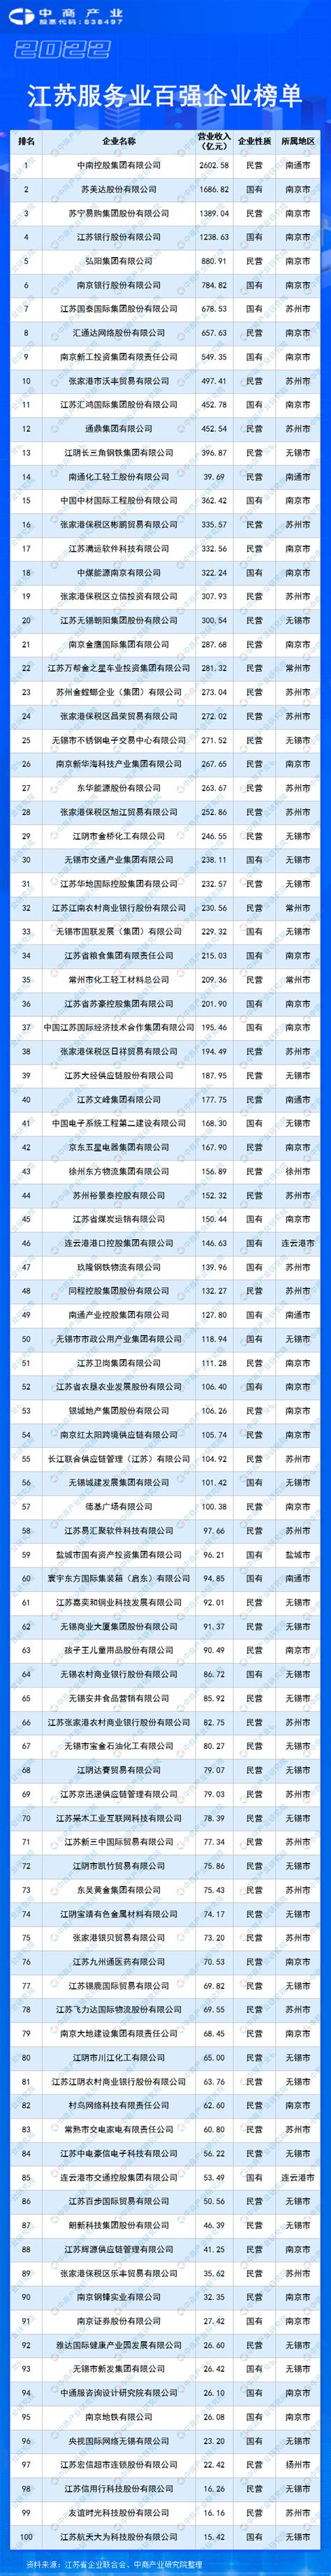 2021年江苏省中央空调市场报告_市场行情_制冷网